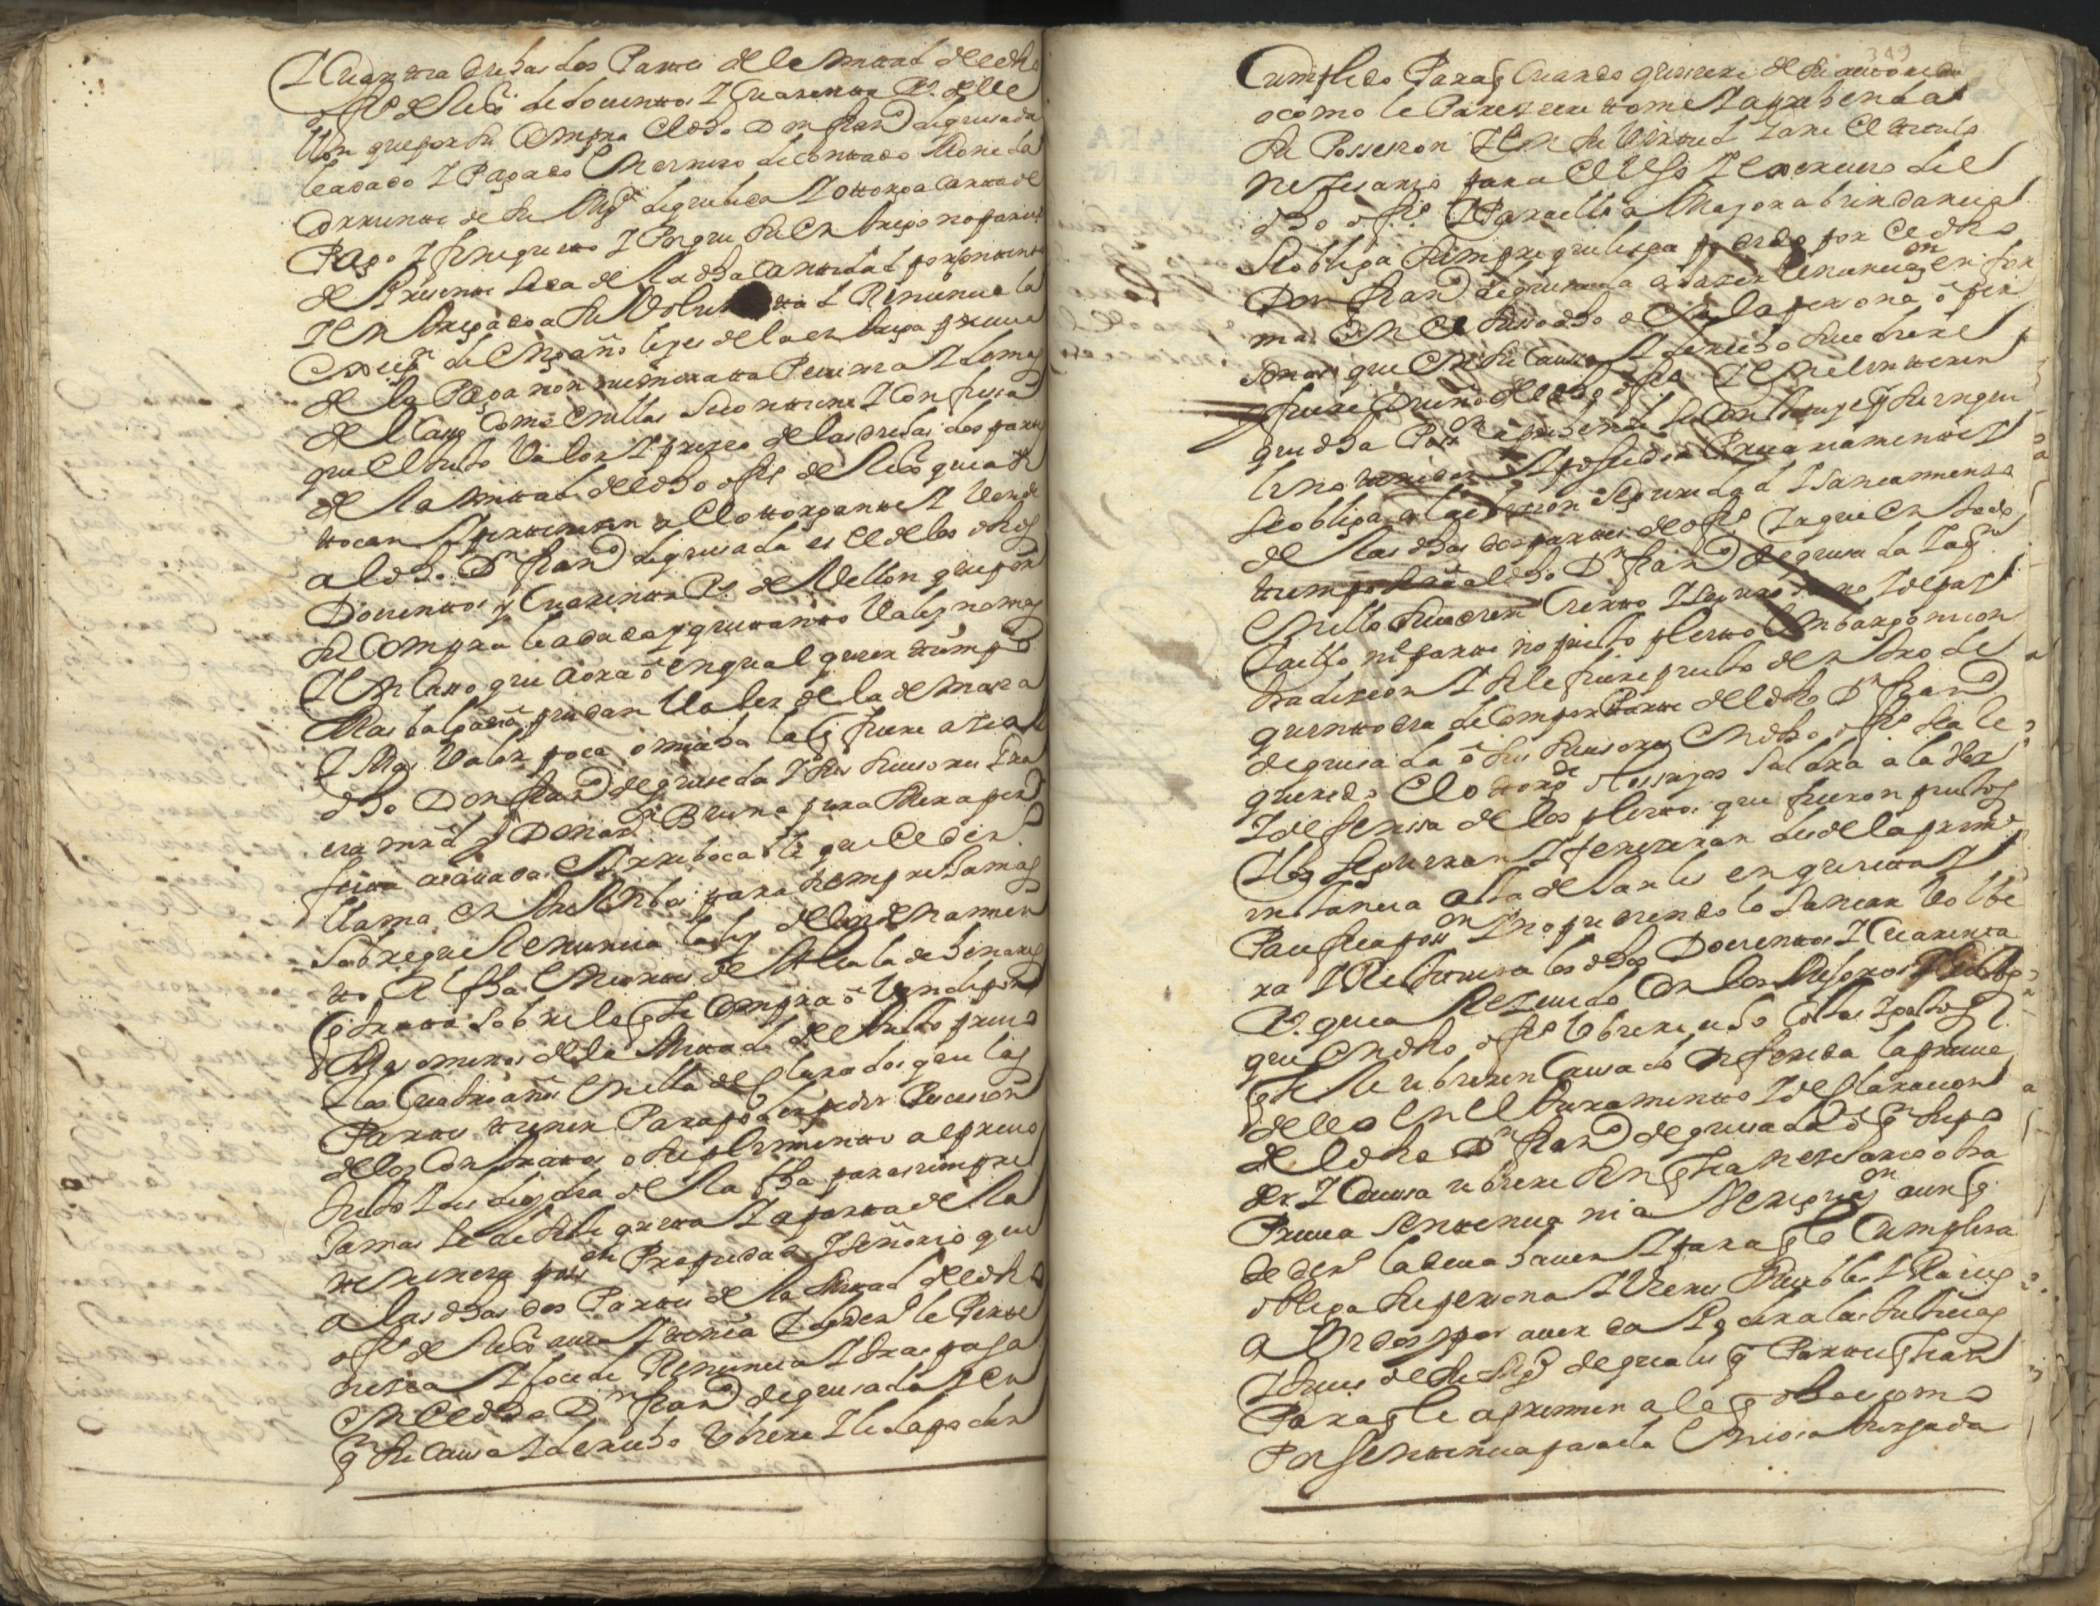 Registros de Juan Torrecilla del Puerto, Caravaca de la Cruz. Años 1696-1699.